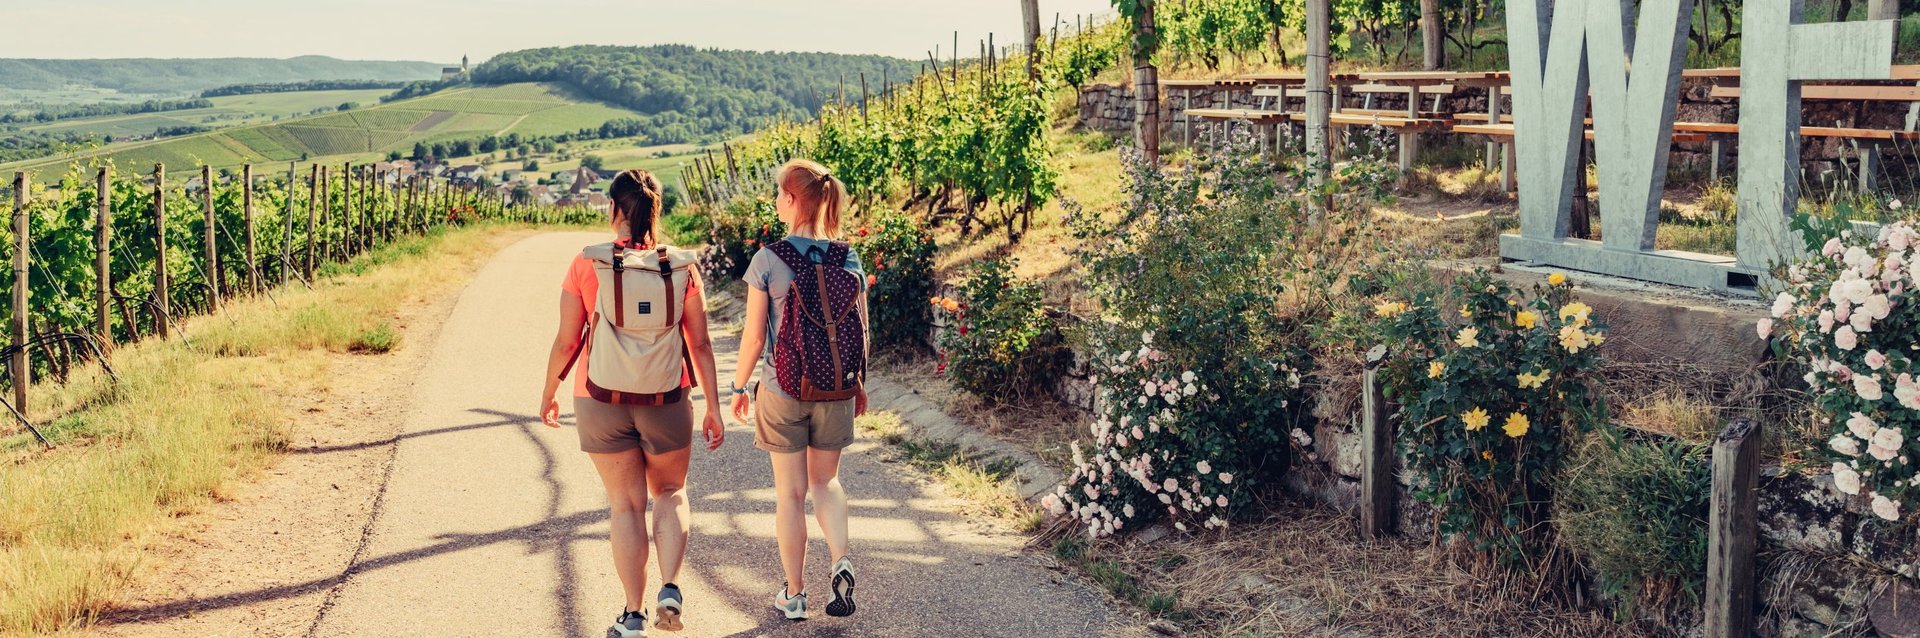 Wandern im Weinsüden Baden-Württemberg | WeinWandern HeilbronnerLand